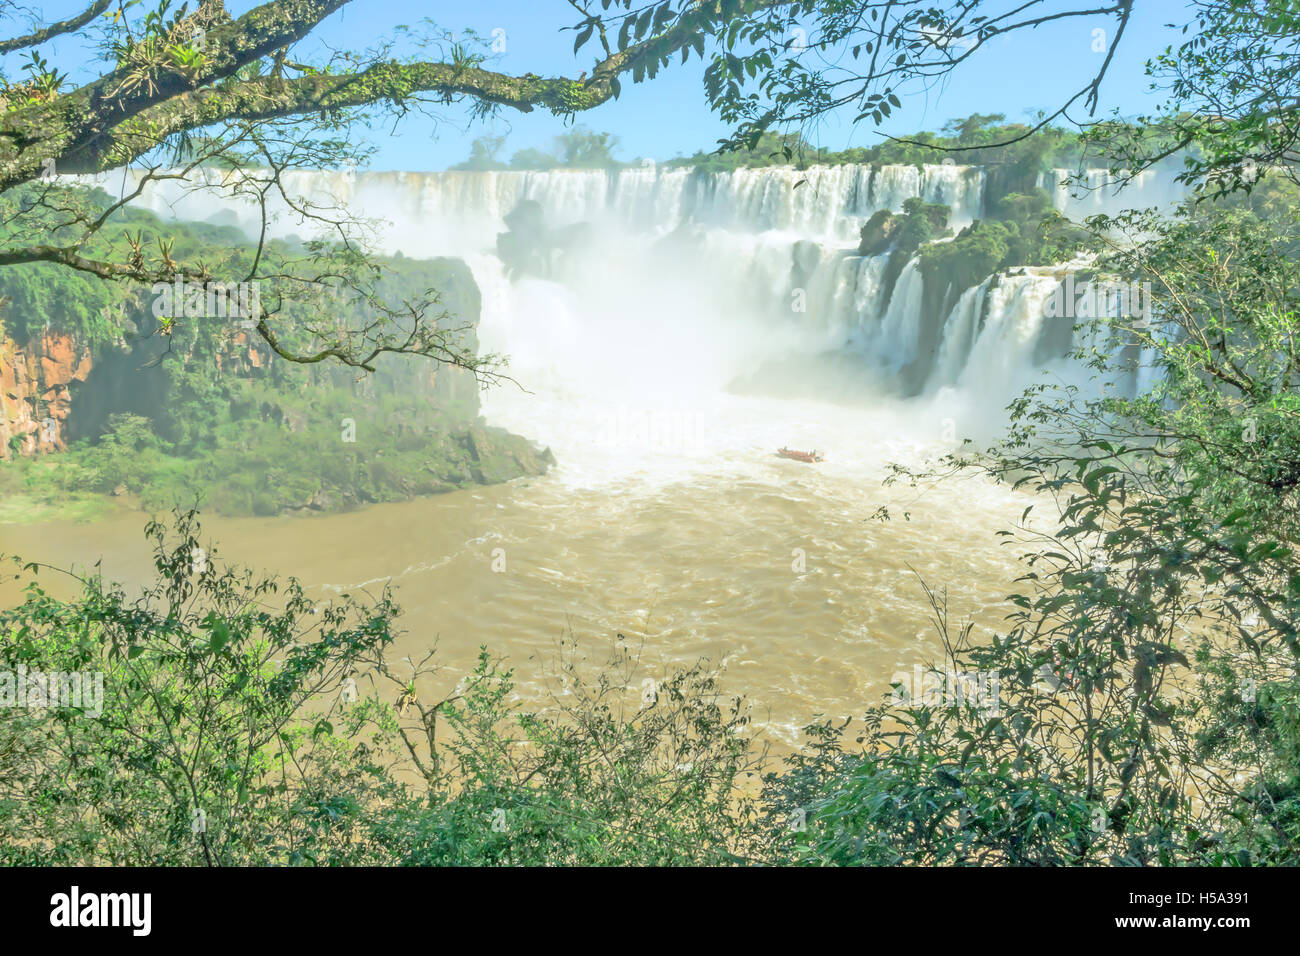 Parc National d'Iguaçu, à la frontière de l'Argentine et le Brésil. Côté argentin Banque D'Images